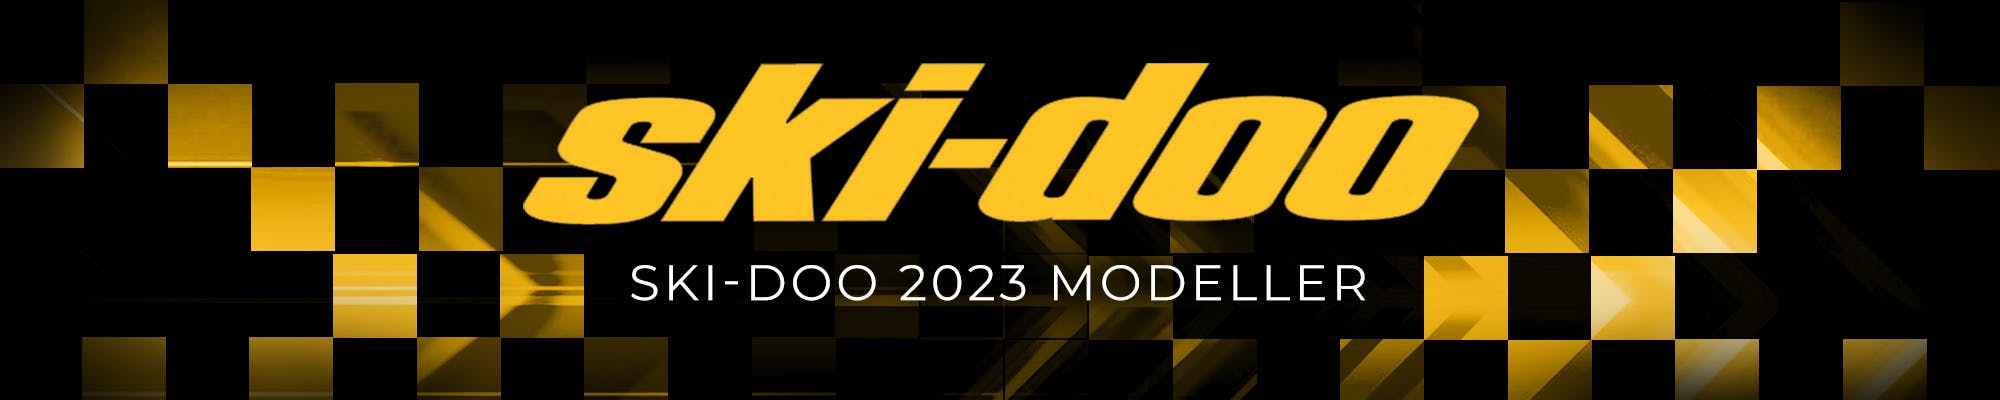 Ski-Doo Modeller 2023